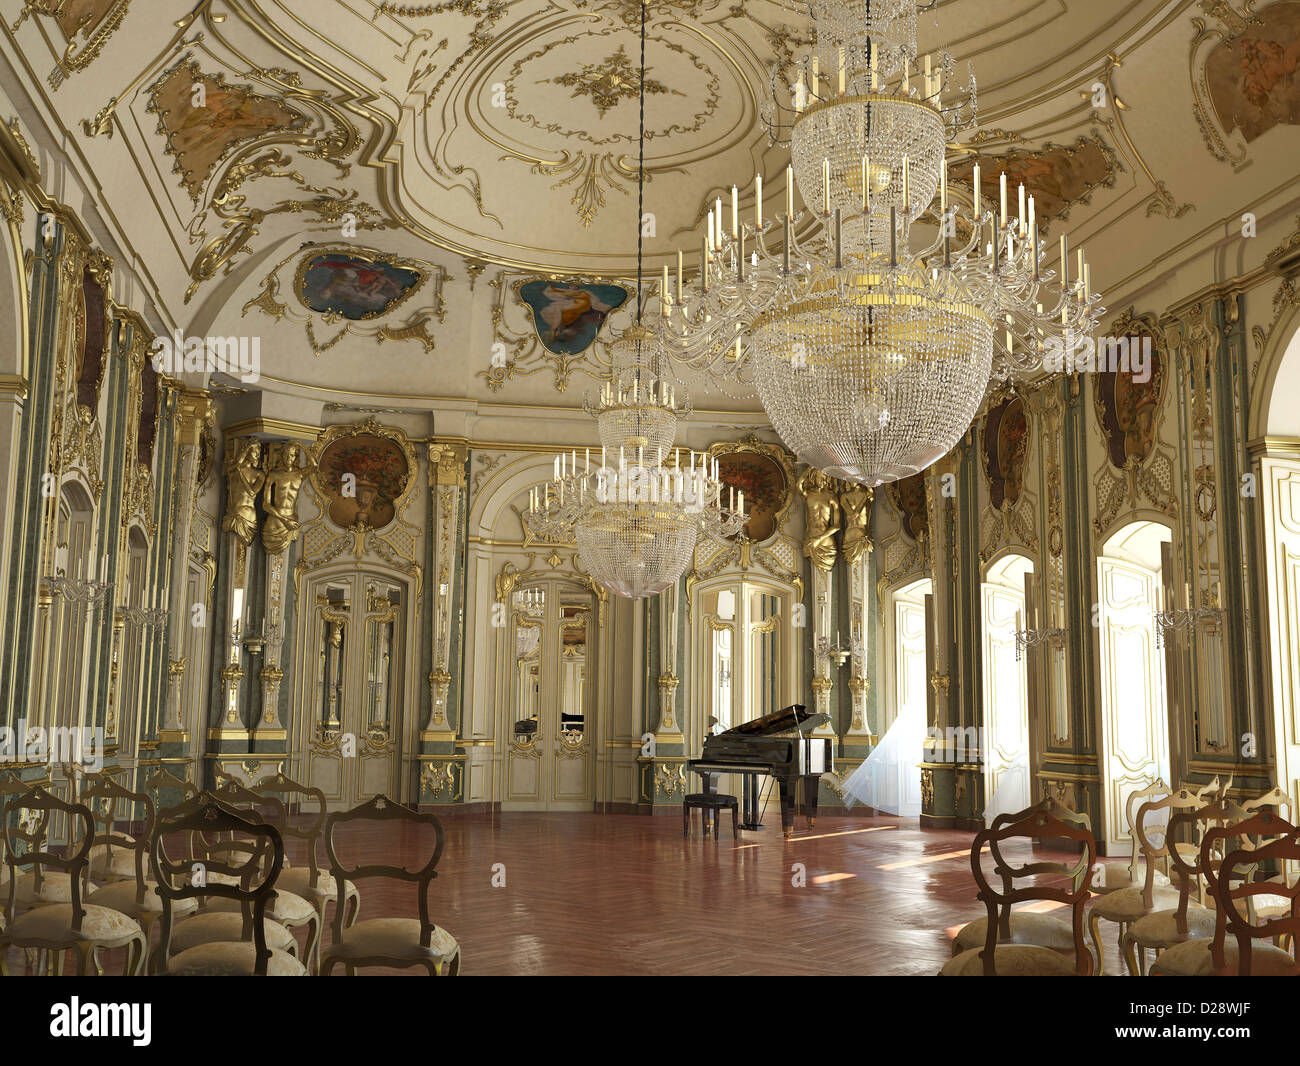 Majestic grand piano décoration salle de concert. Avec des décorations d'or, sculptures, fresques et des lustres. Banque D'Images